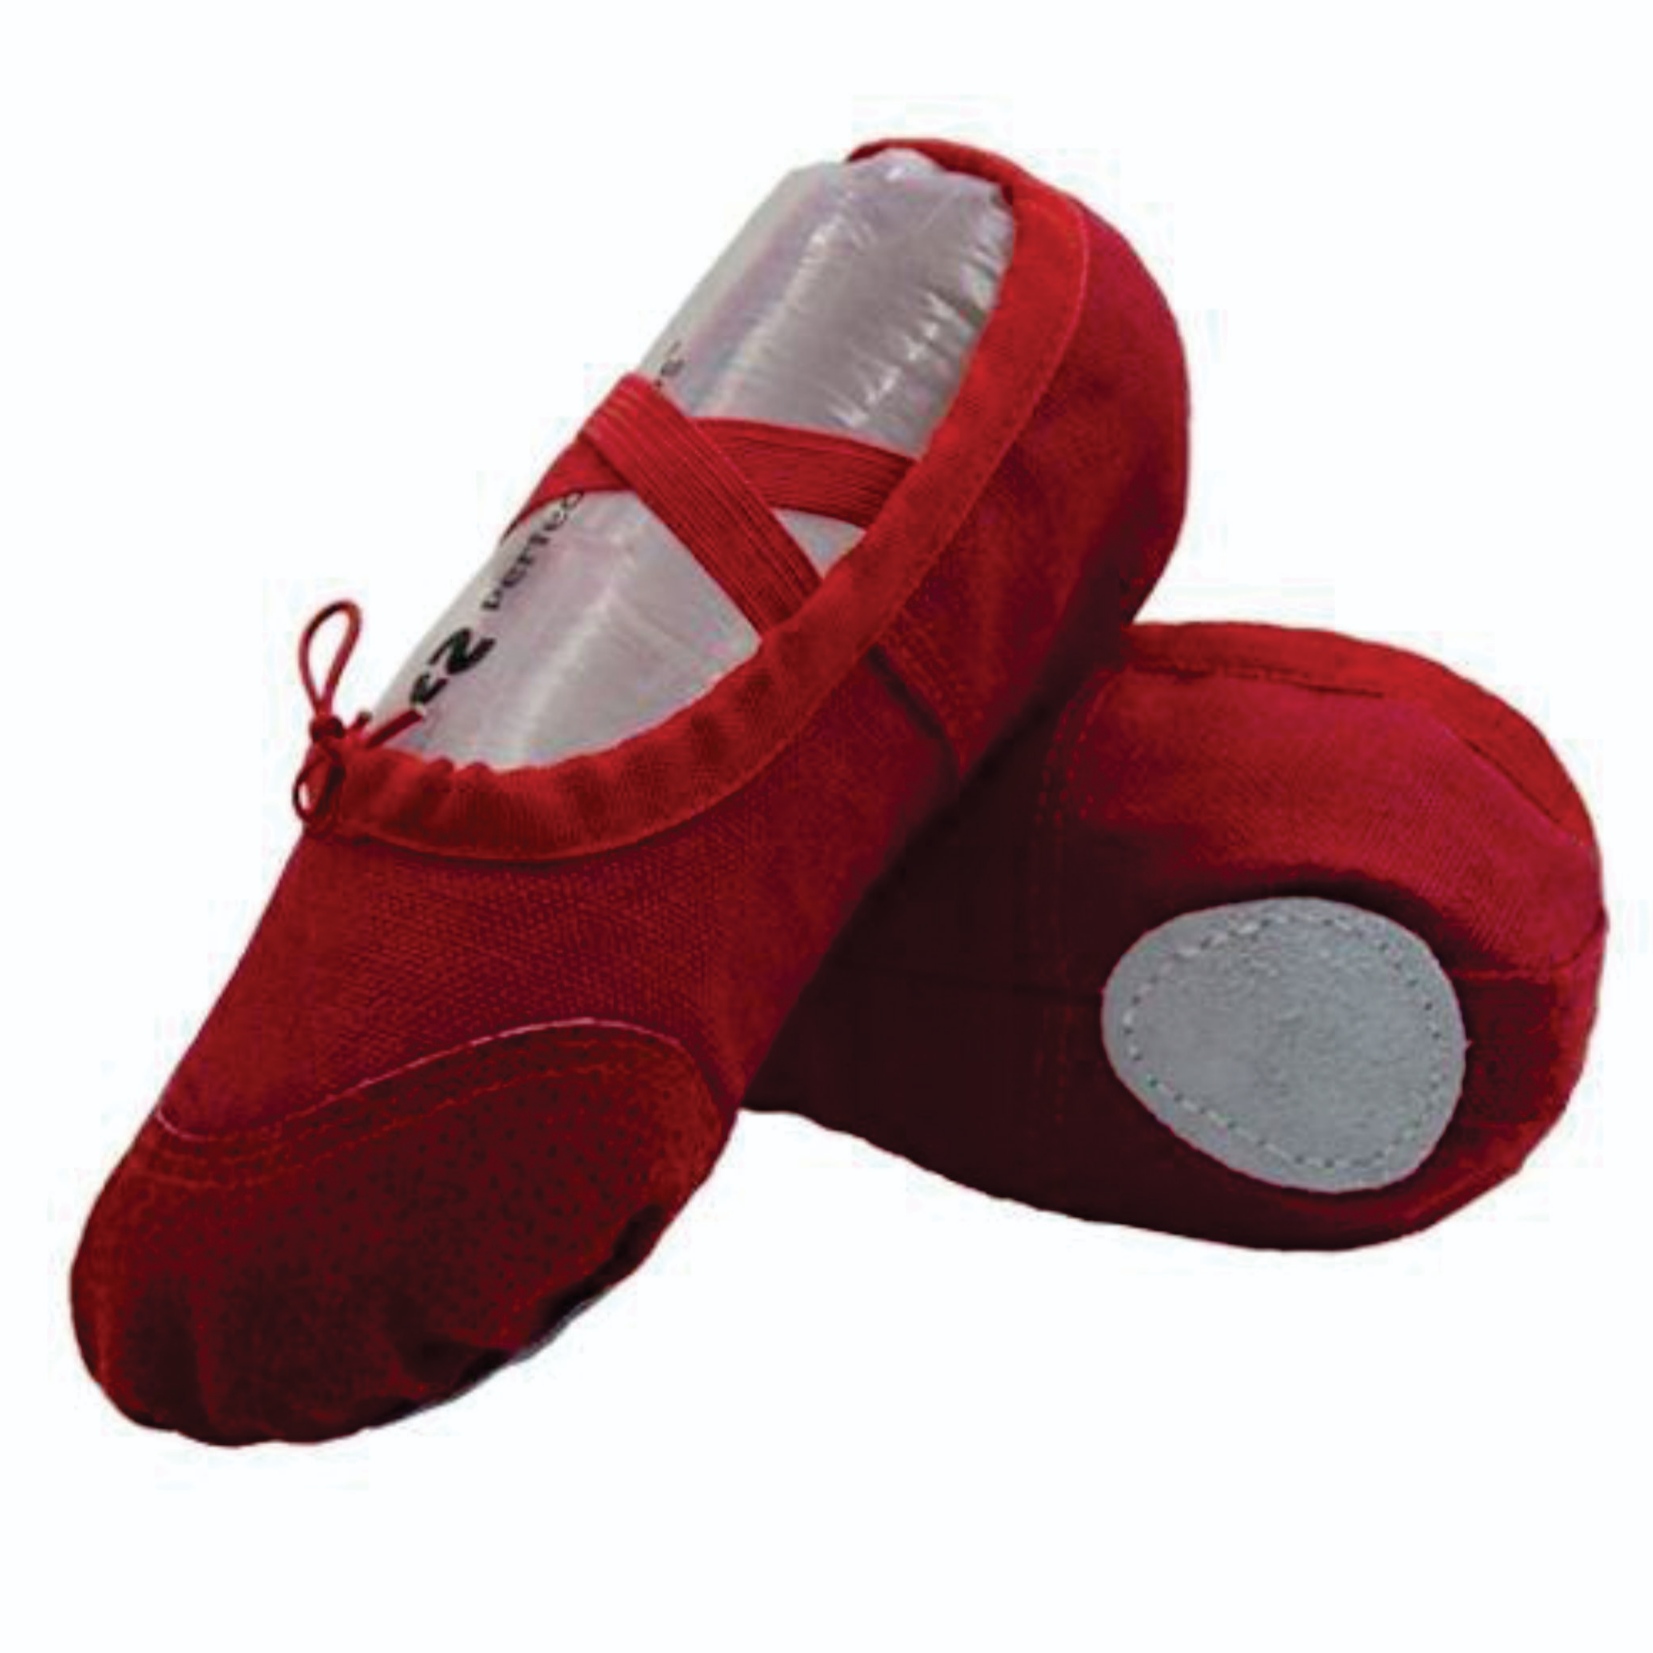 کفش باله زنانه مدل 01 رنگ قرمز